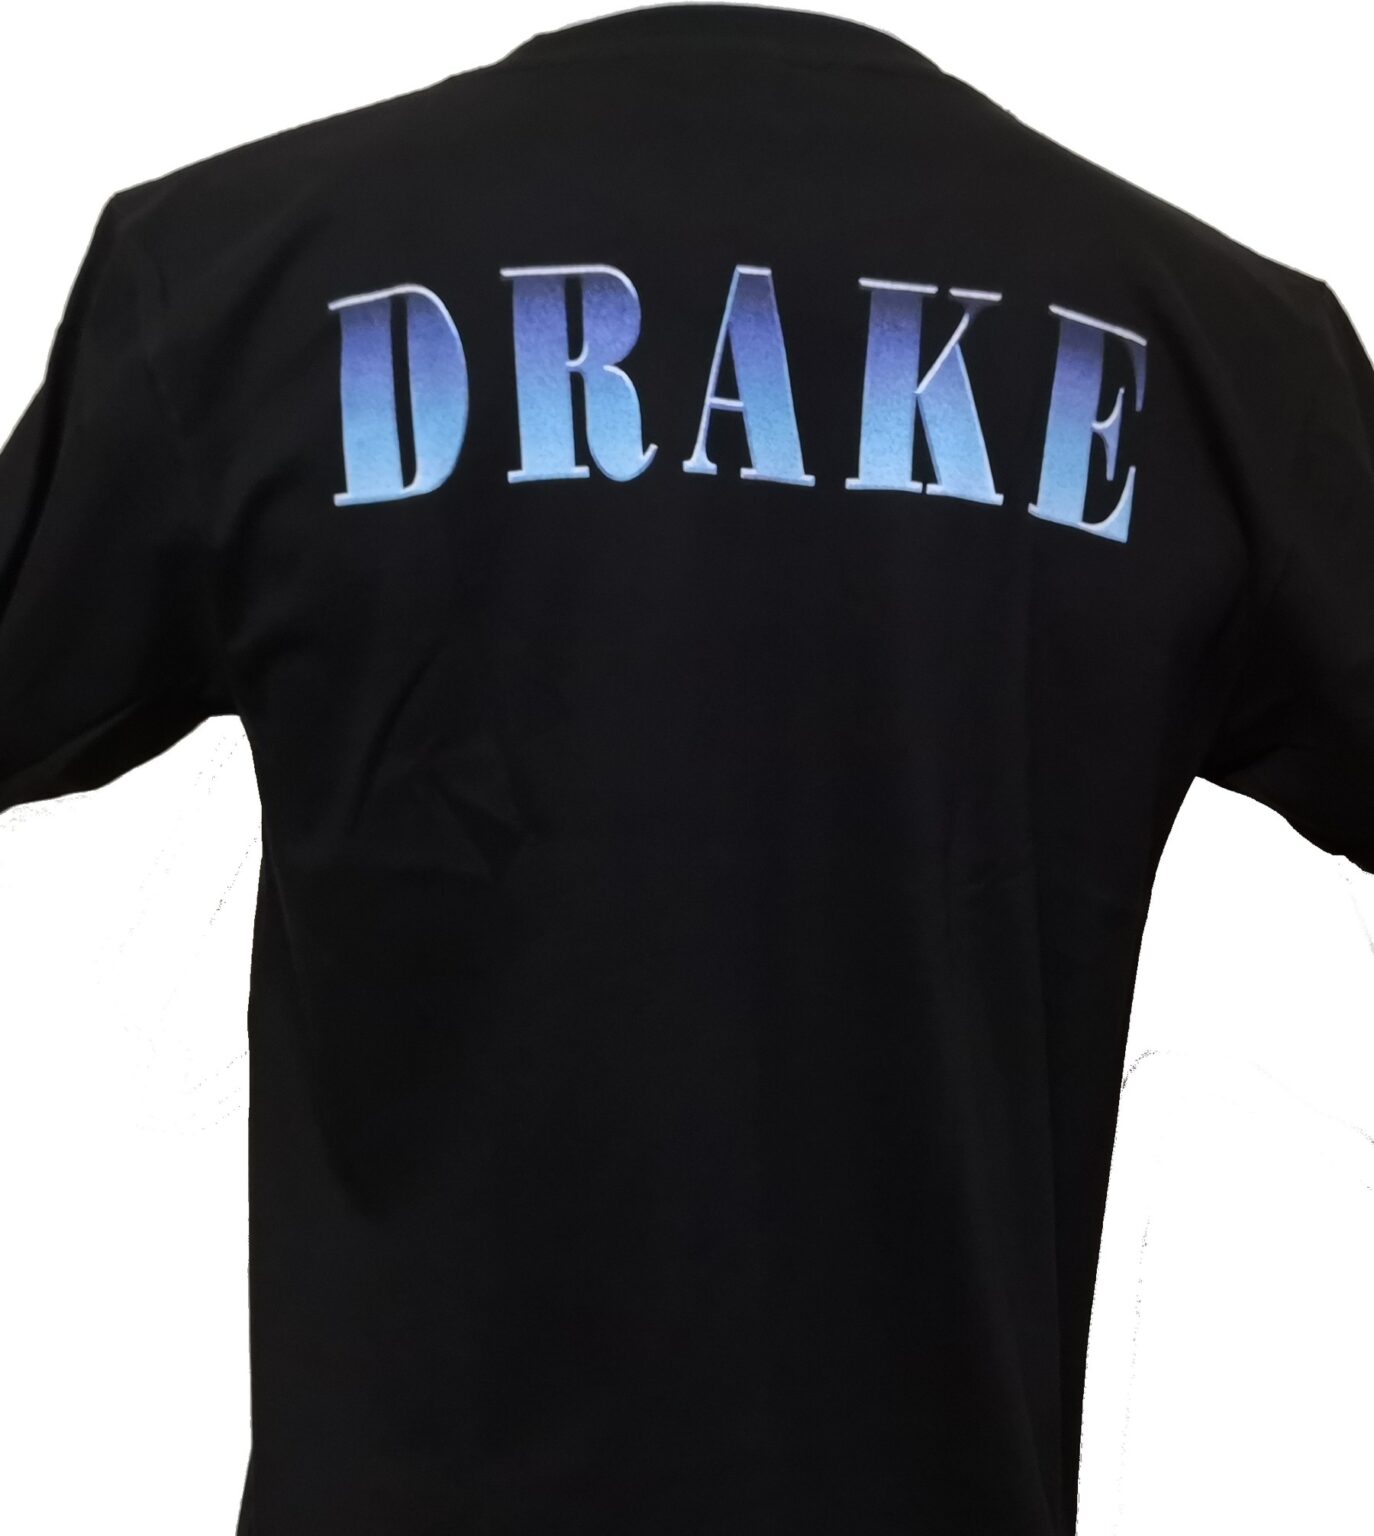 Drake tshirt size XL RoxxBKK